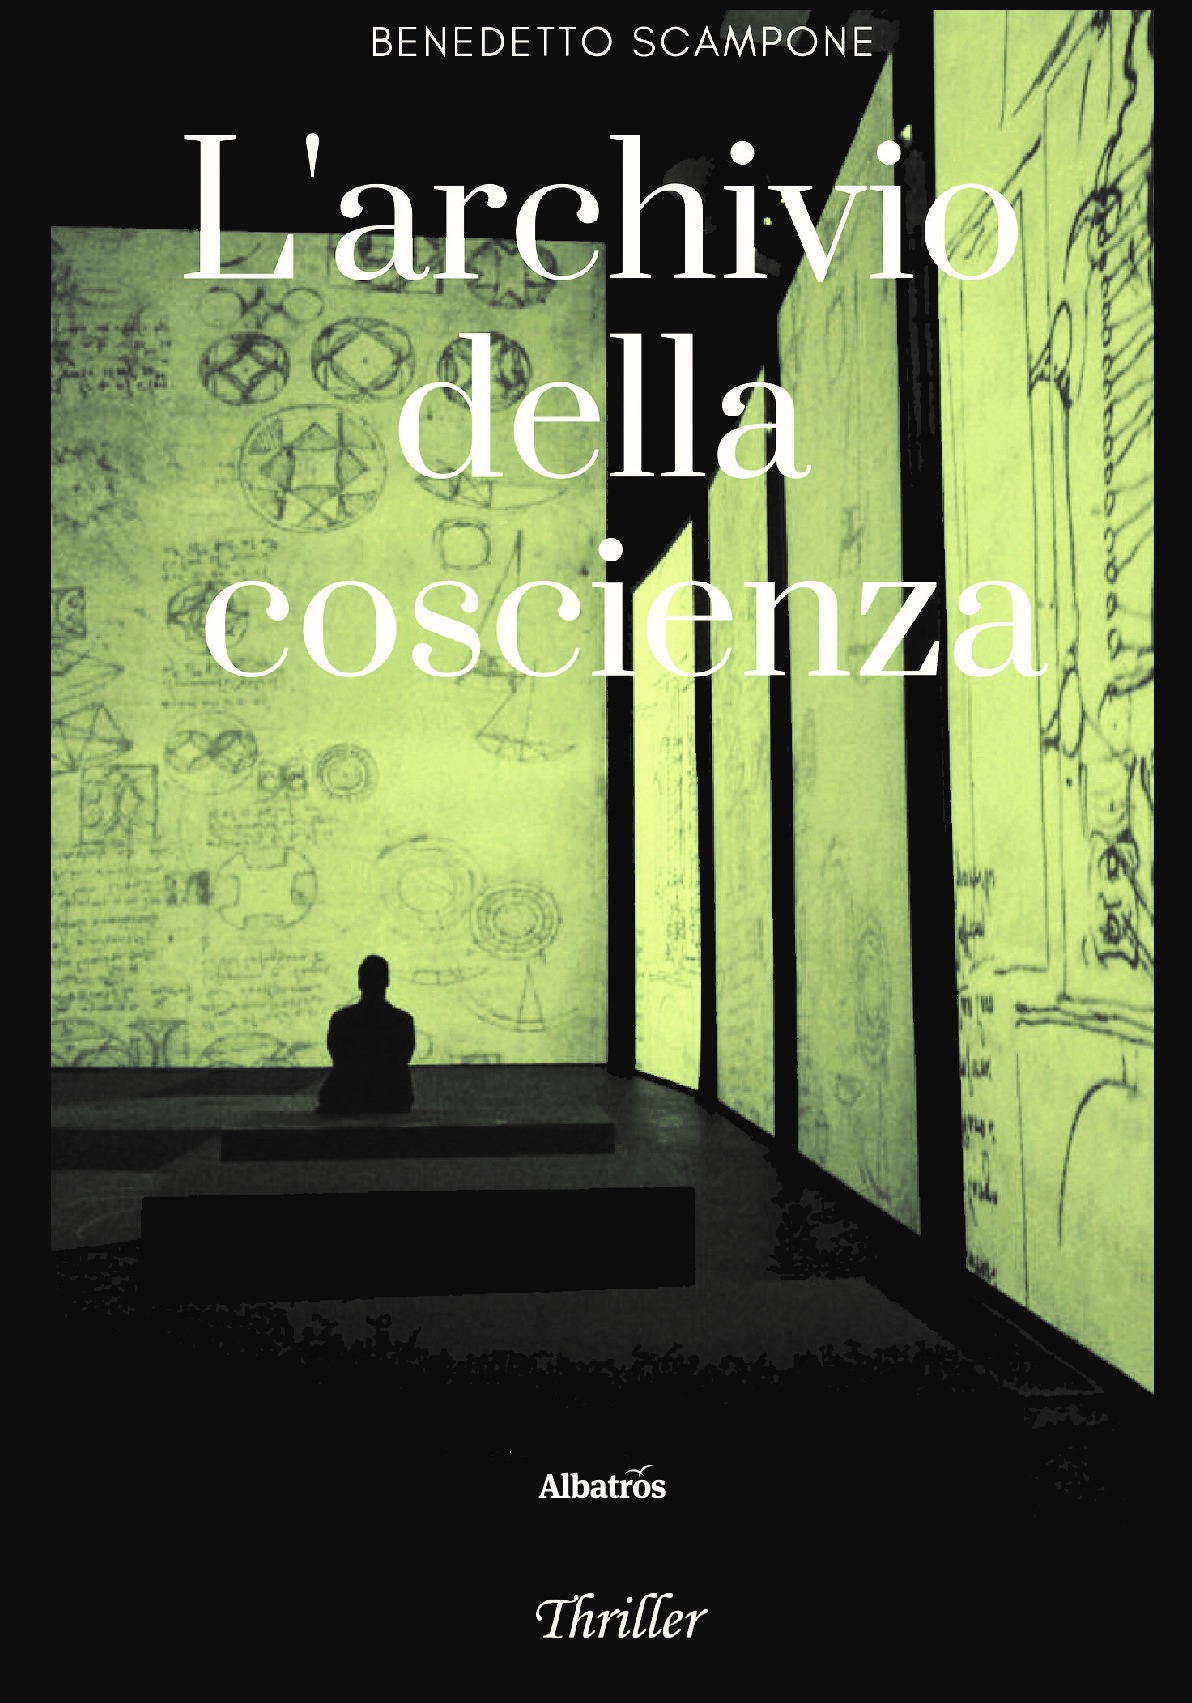 “L’archivio della coscienza”, il nuovo thriller di Benedetto Scampone